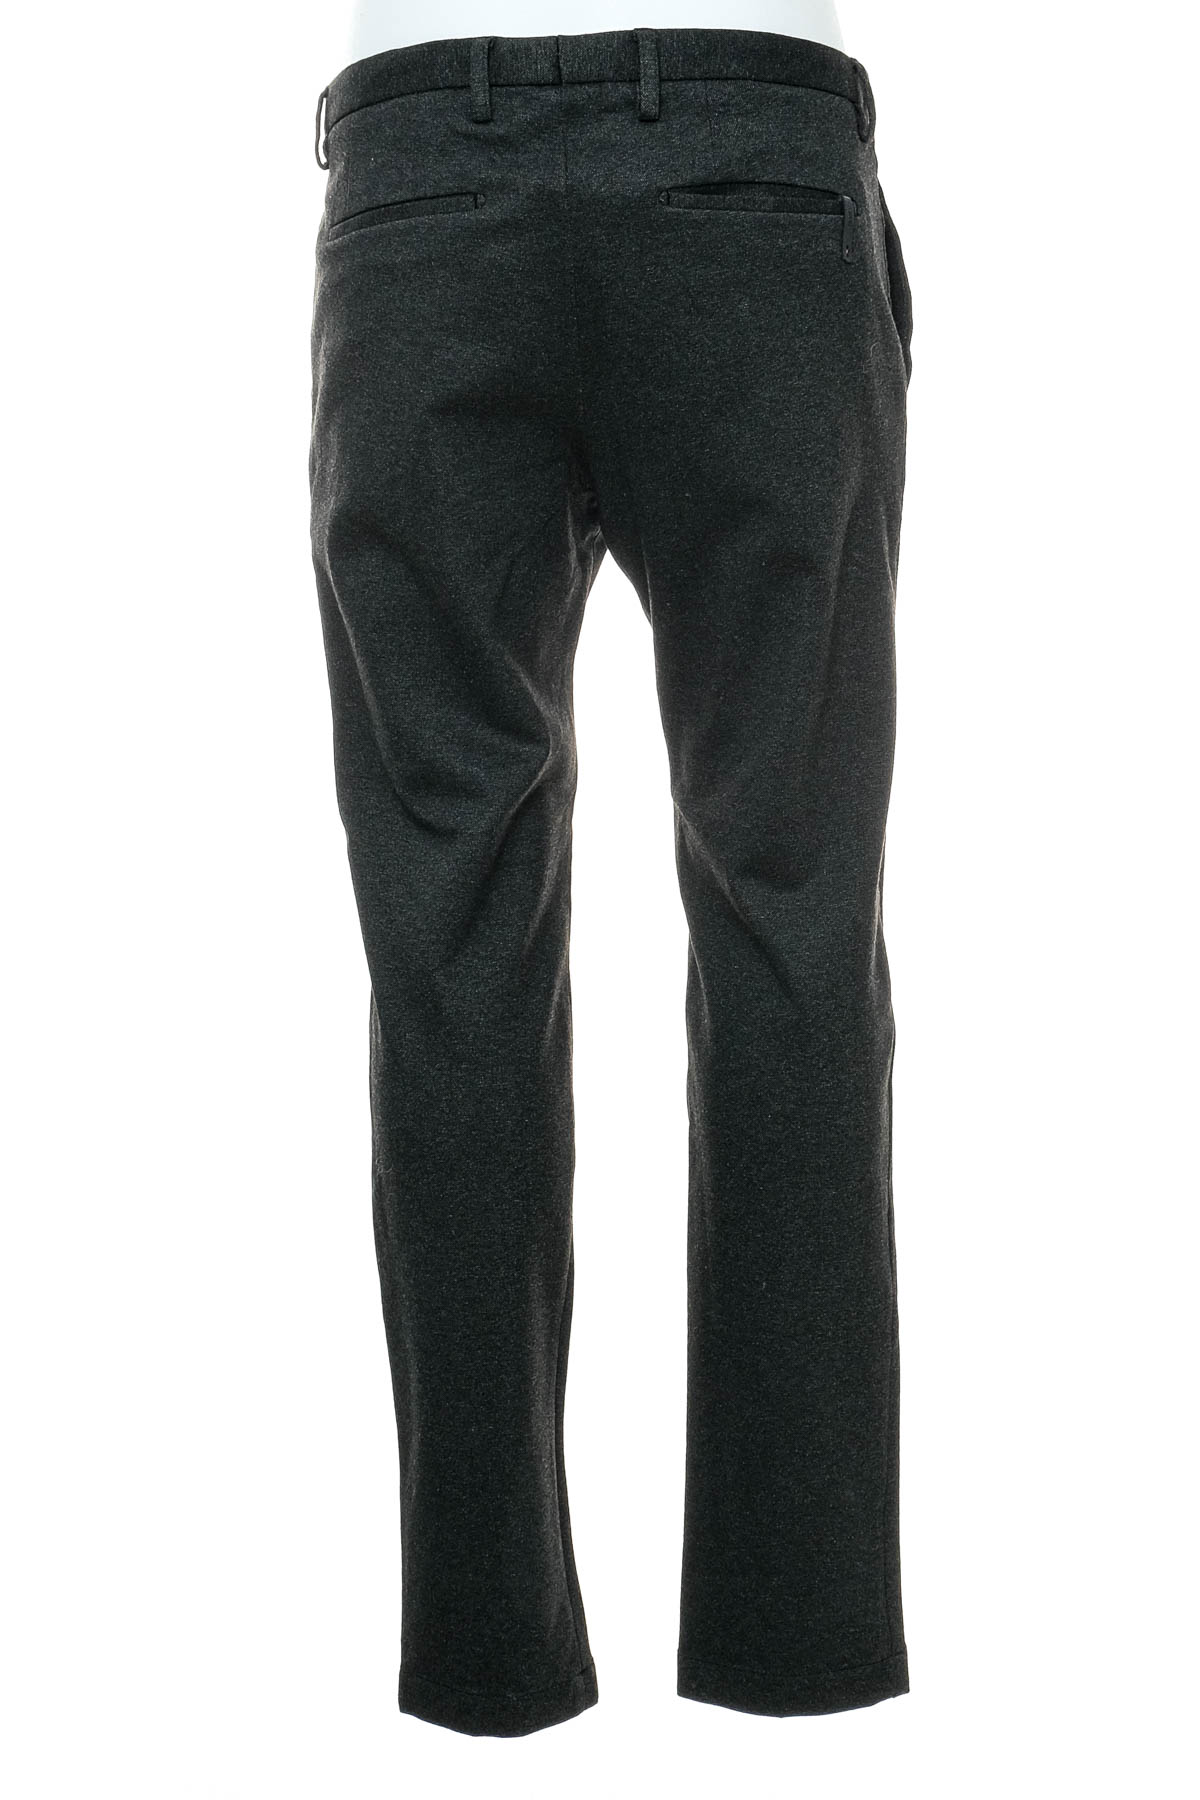 Pantalon pentru bărbați - CINQUE - 1